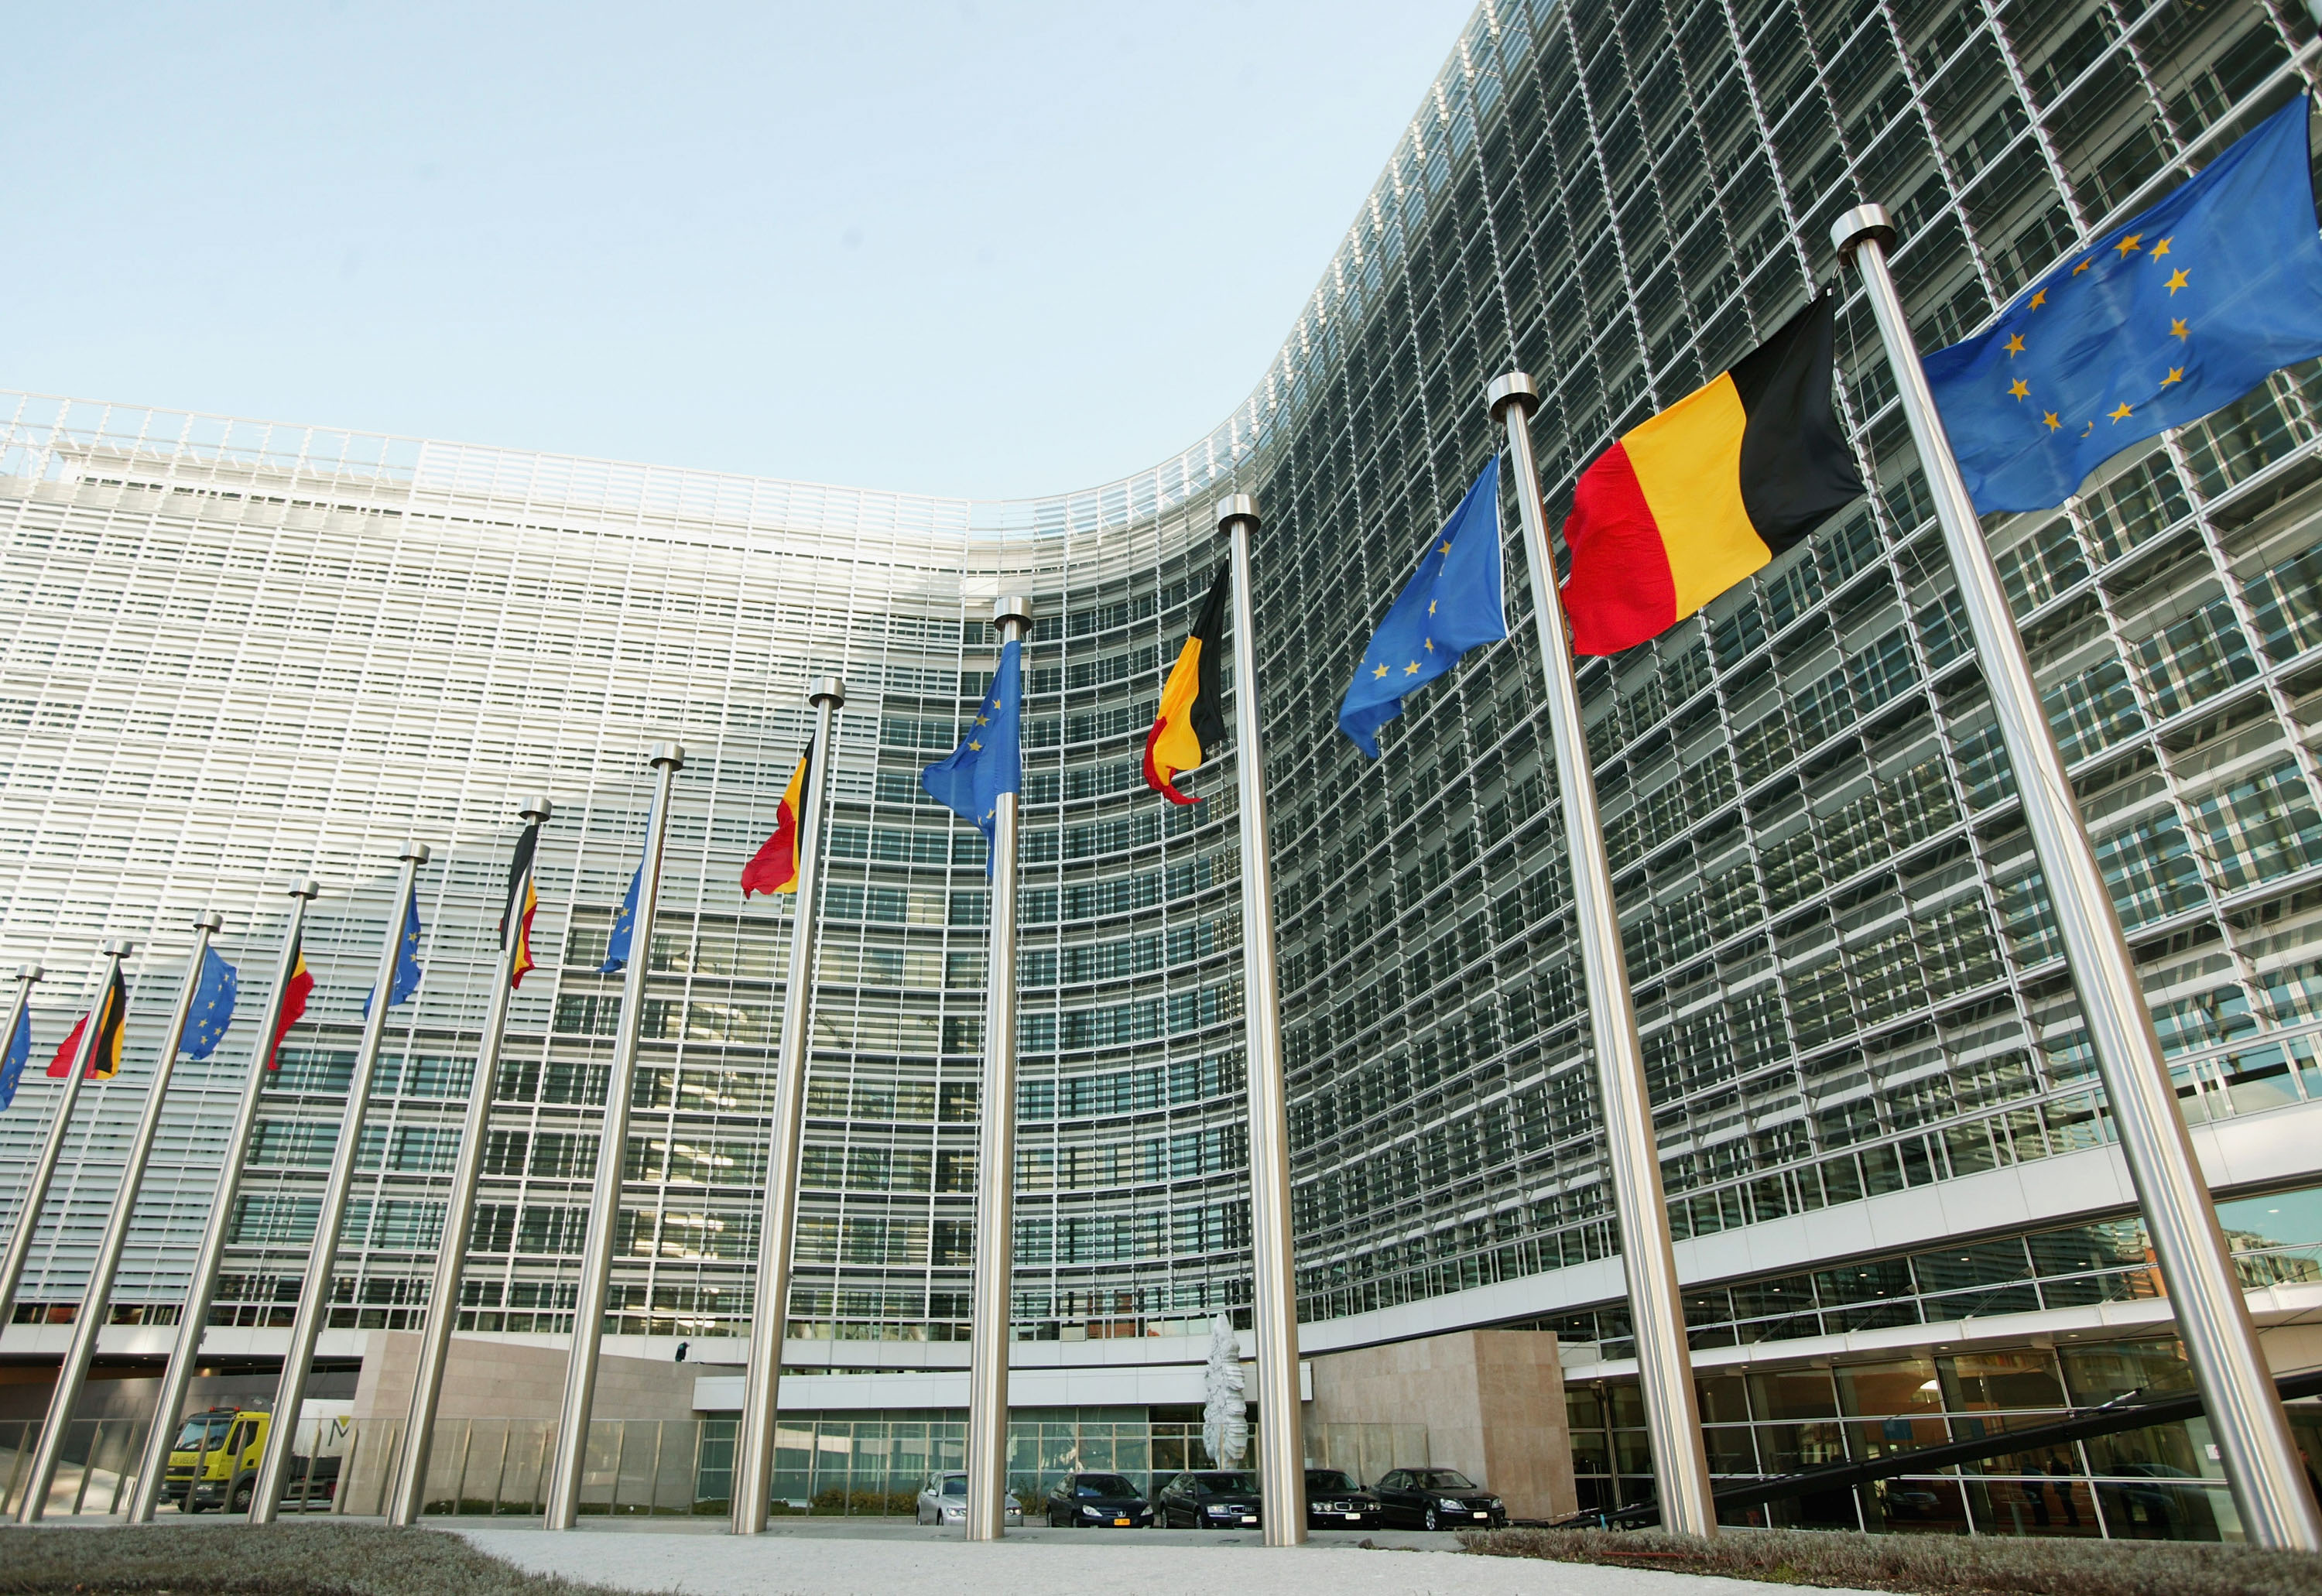 Комисията реши също да подаде иск в Европейския съд срещу Унгария заради приетите от нея спорни закони за НПО